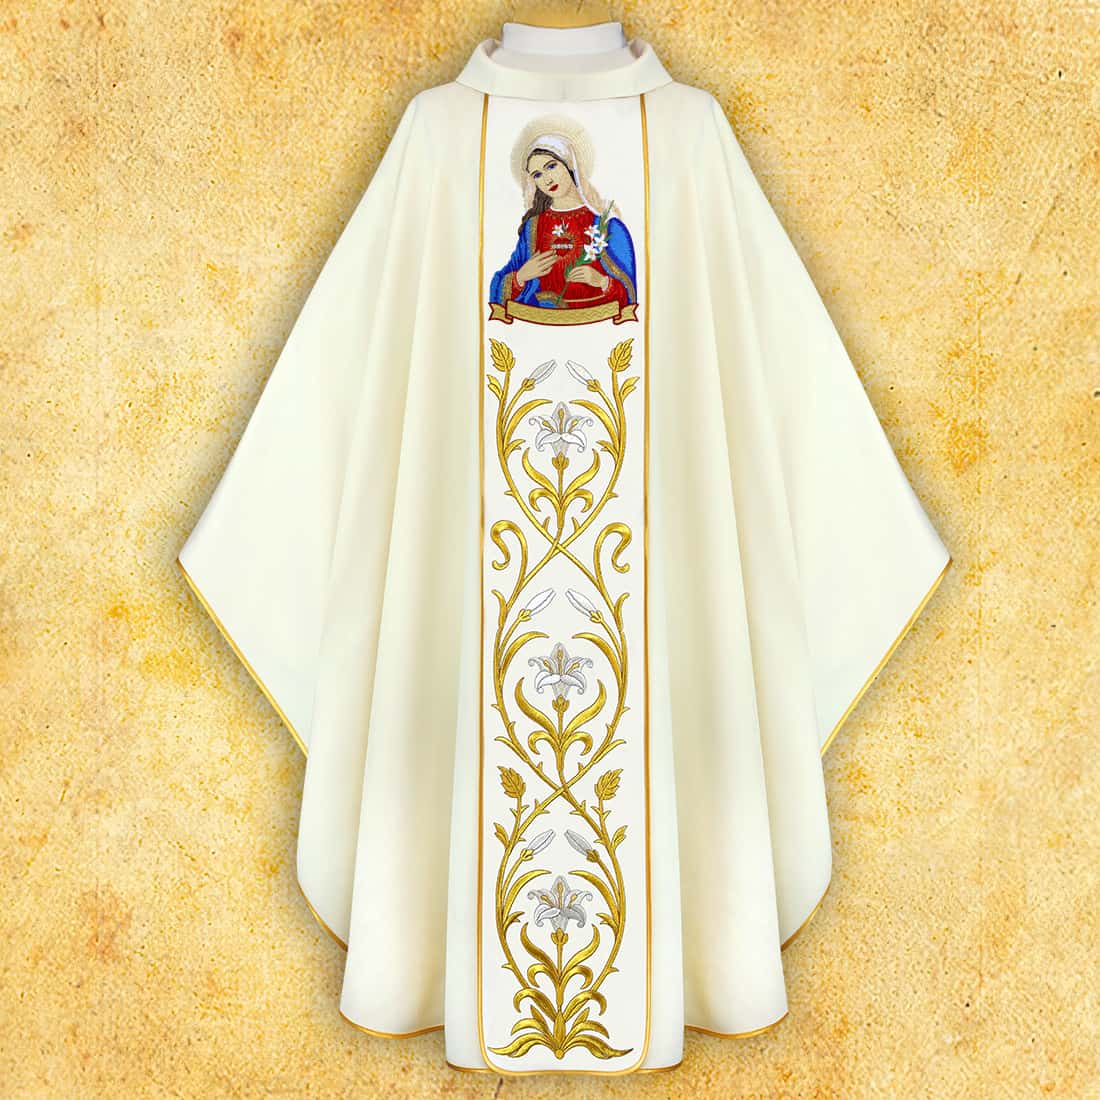 Casulla con imagen bordada "Corazón de María"